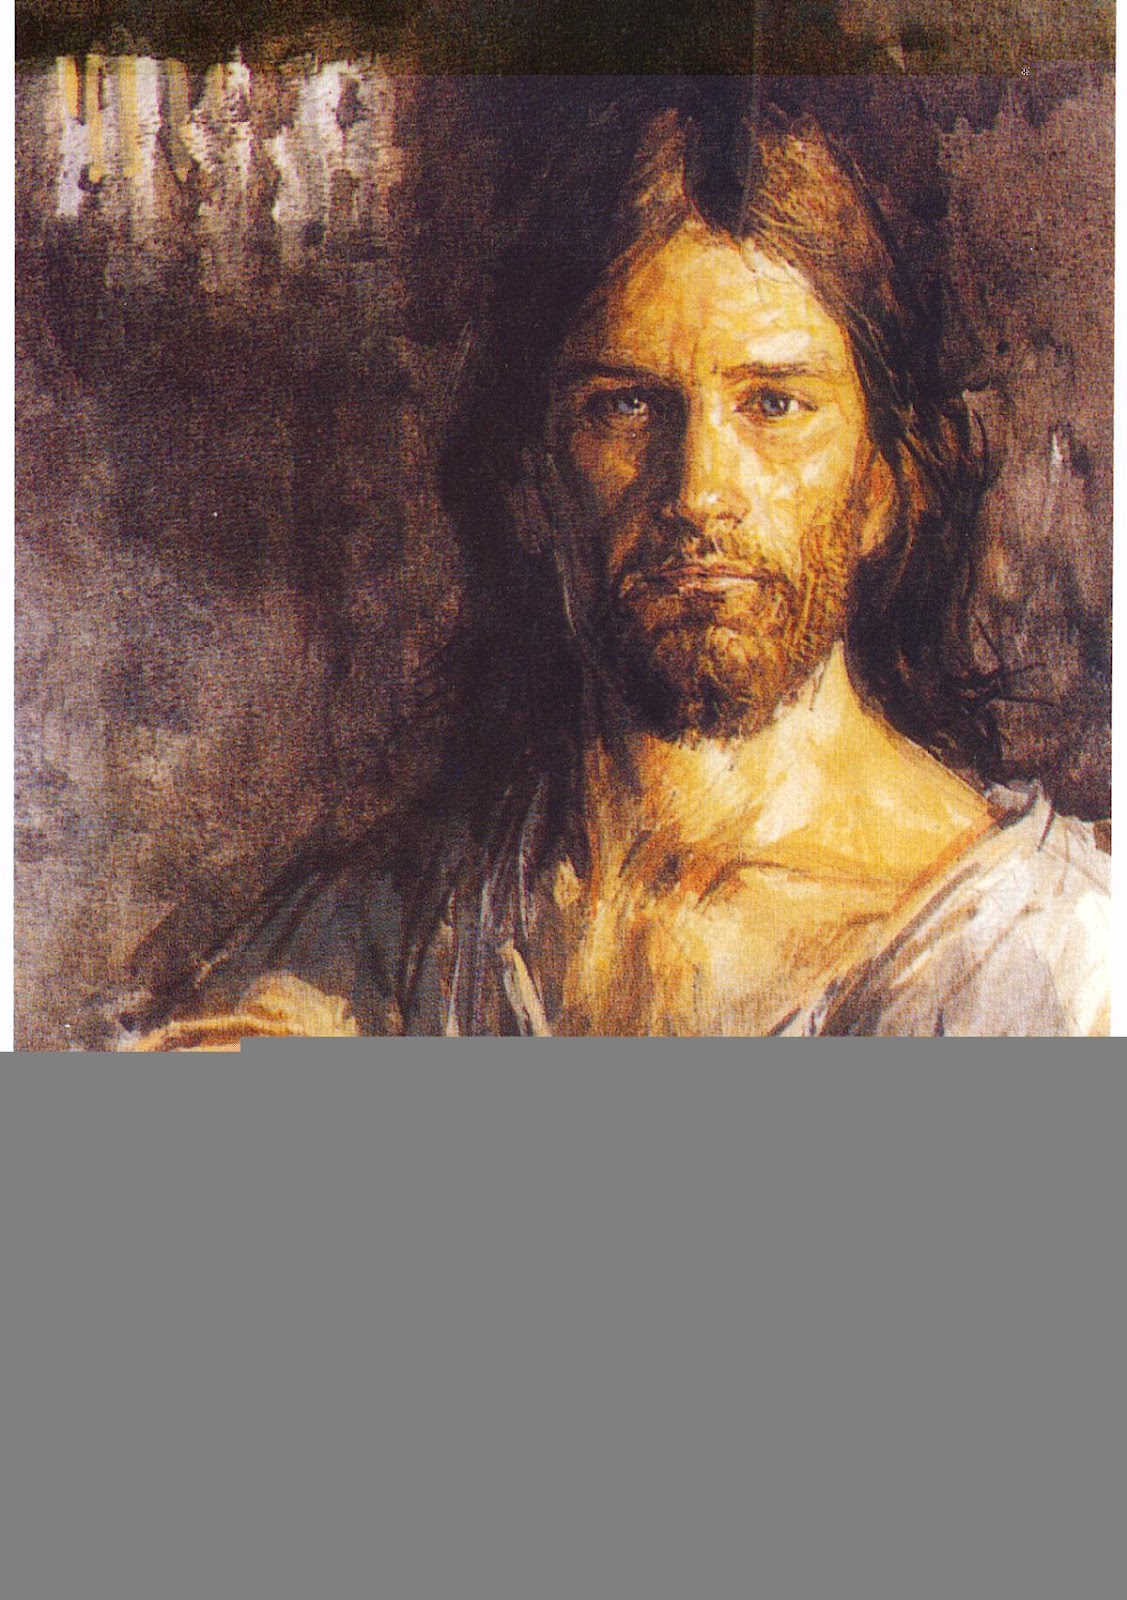 JESUS WALLPAPERS ~ Christians wallpaper|Verses|Geet Zaboor|Messages ...